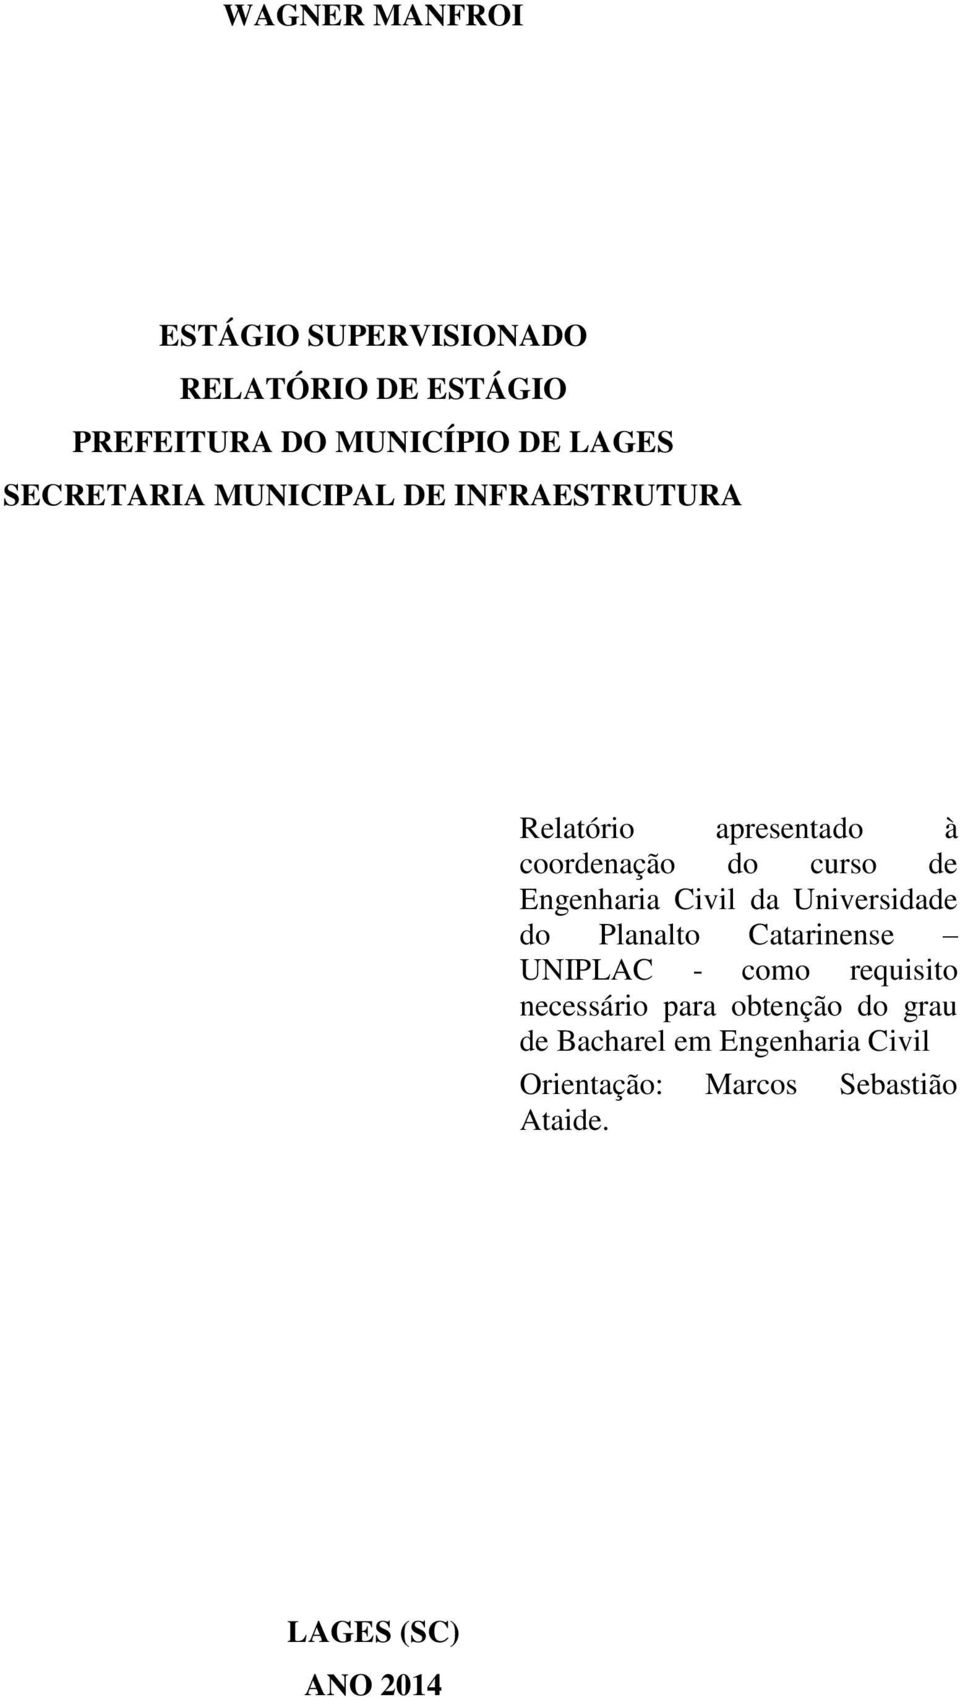 Engenharia Civil da Universidade do Planalto Catarinense UNIPLAC - como requisito necessário